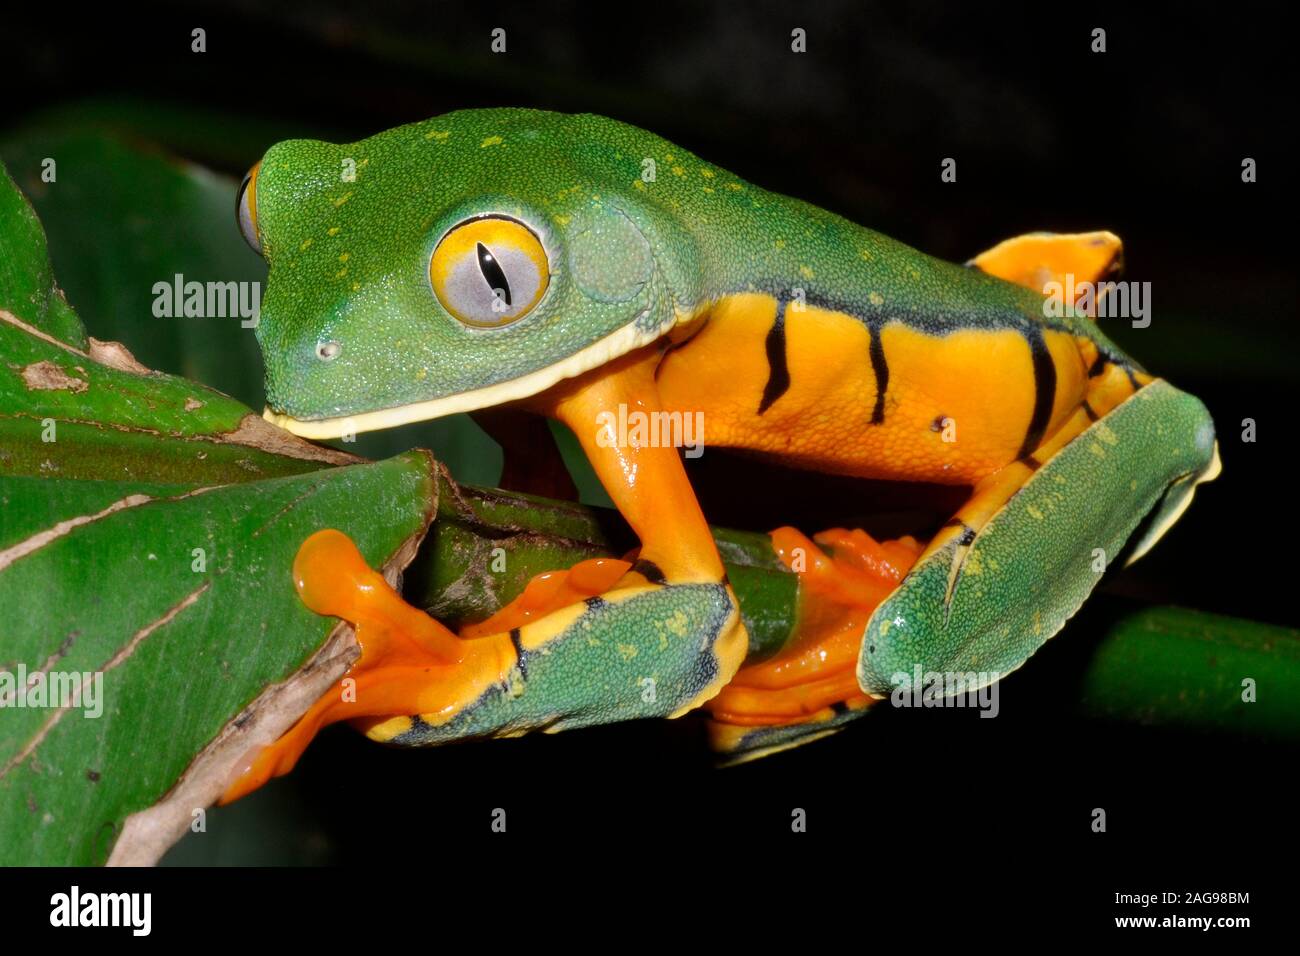 Tiger-striped leaf frog (Phyllomedusa tomopterna), Costa Rica Banque D'Images